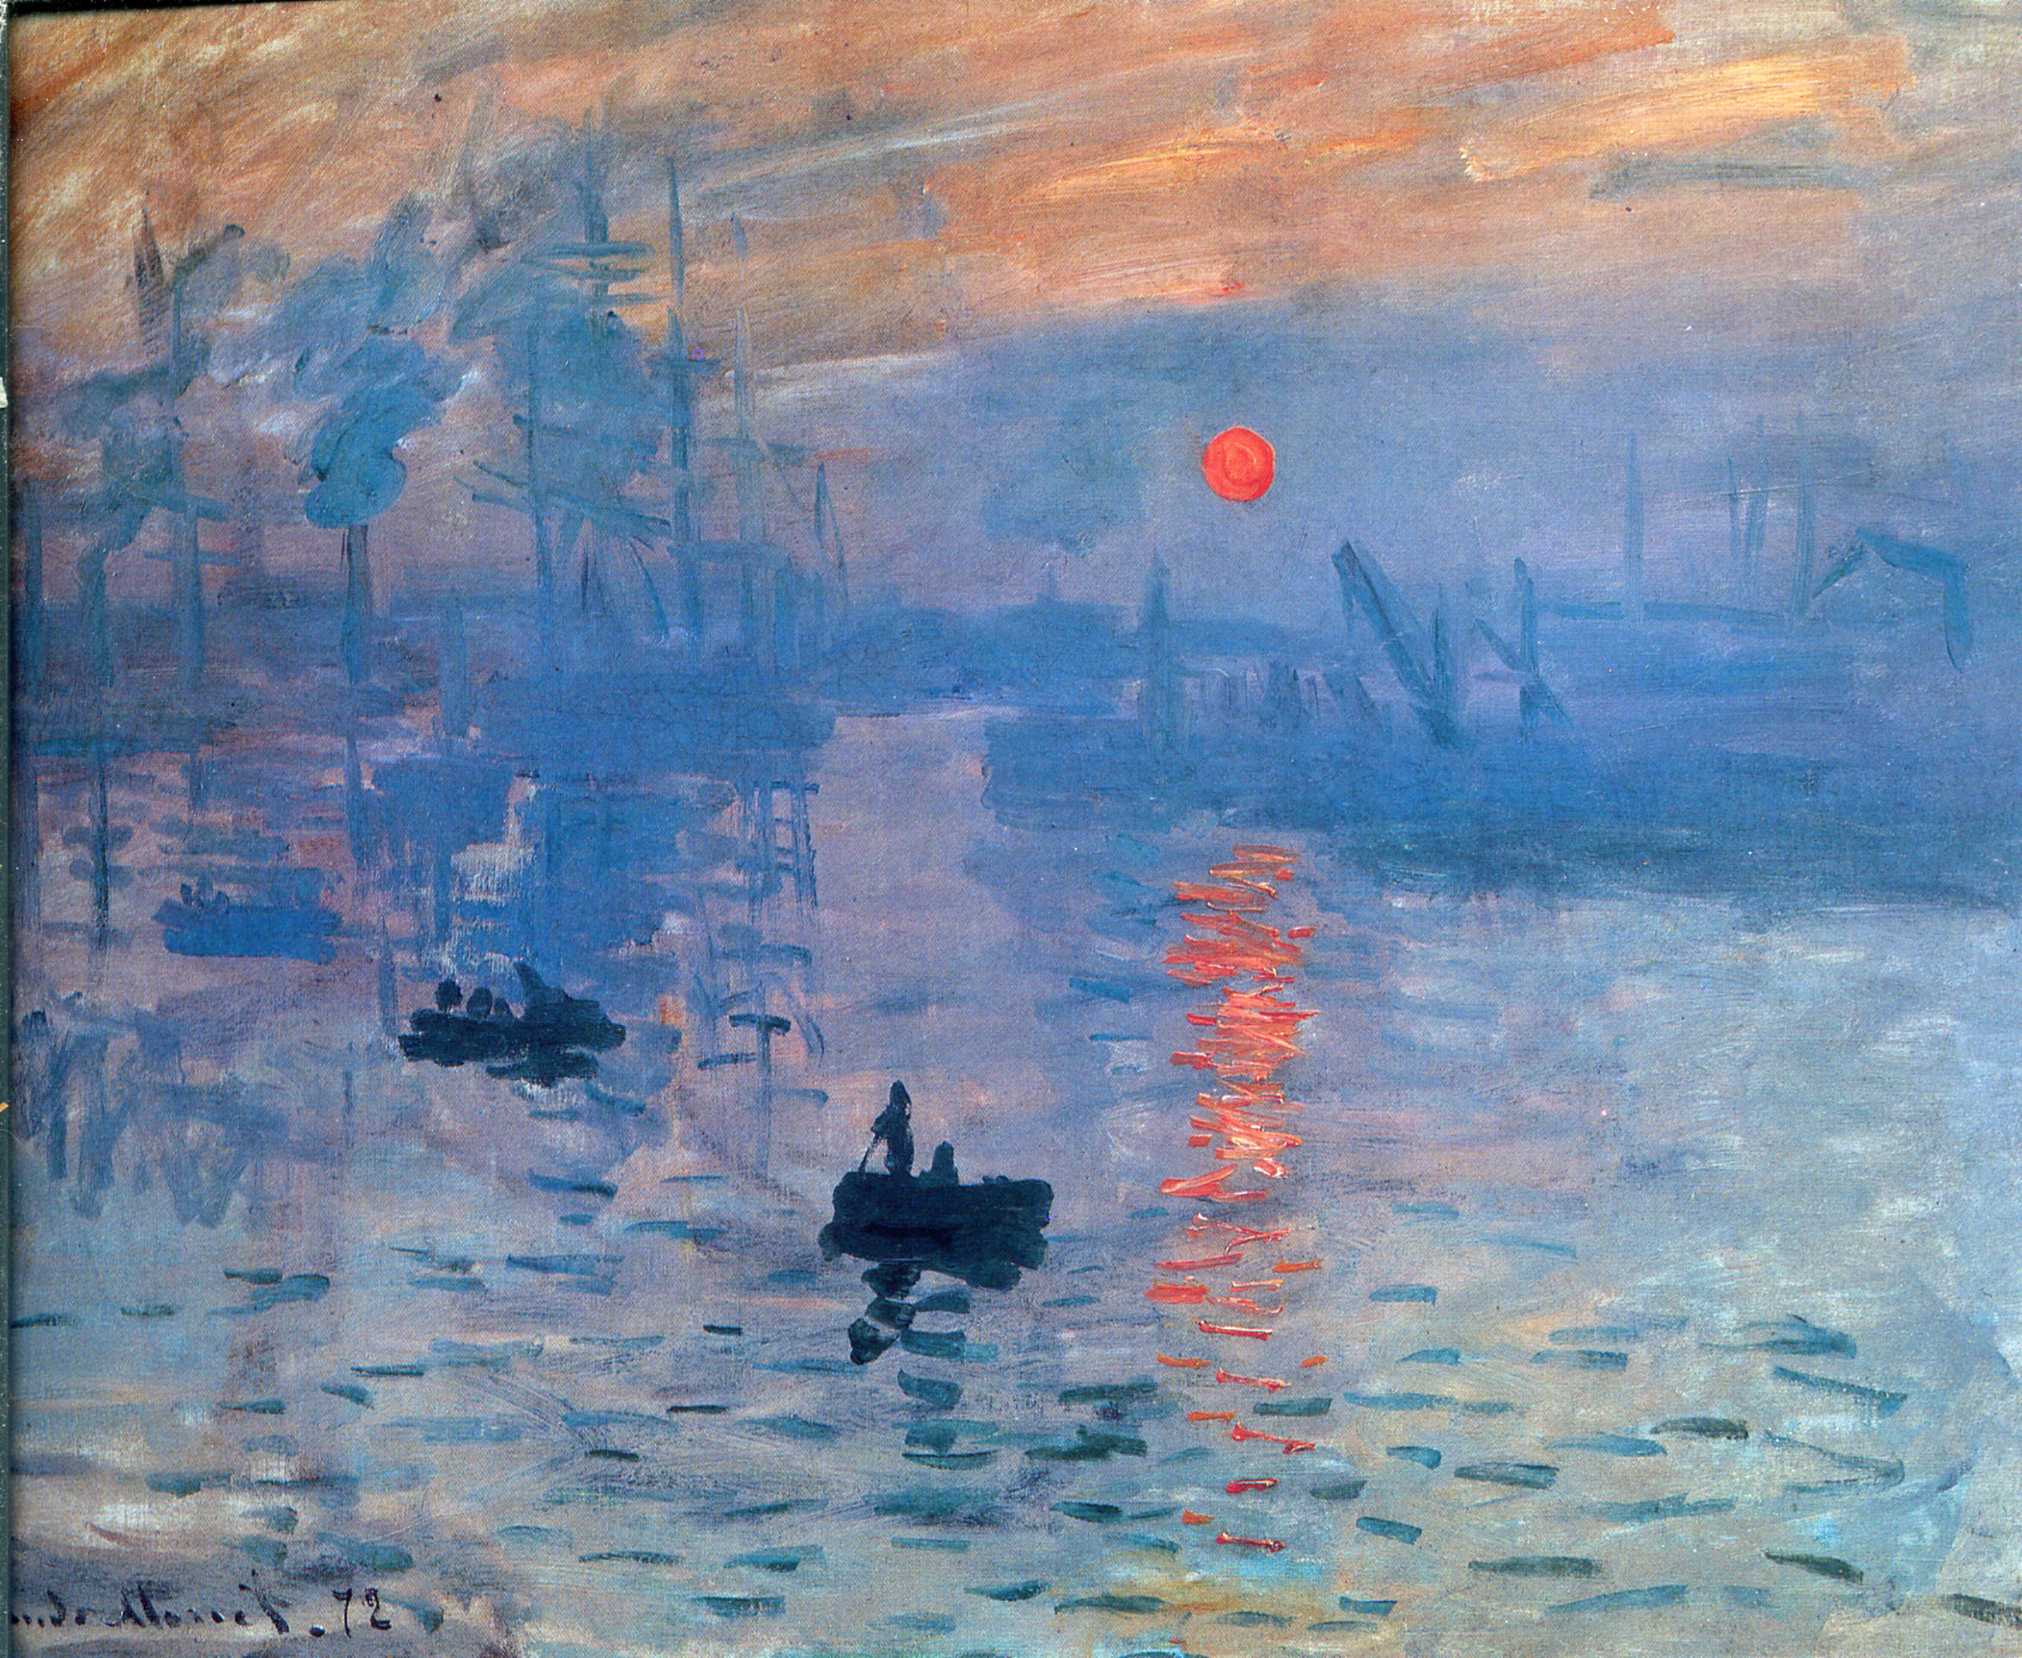 Impression, Sunrise by Claude Monet - 1873 - 48 cm × 63 cm Musée Marmottan Monet